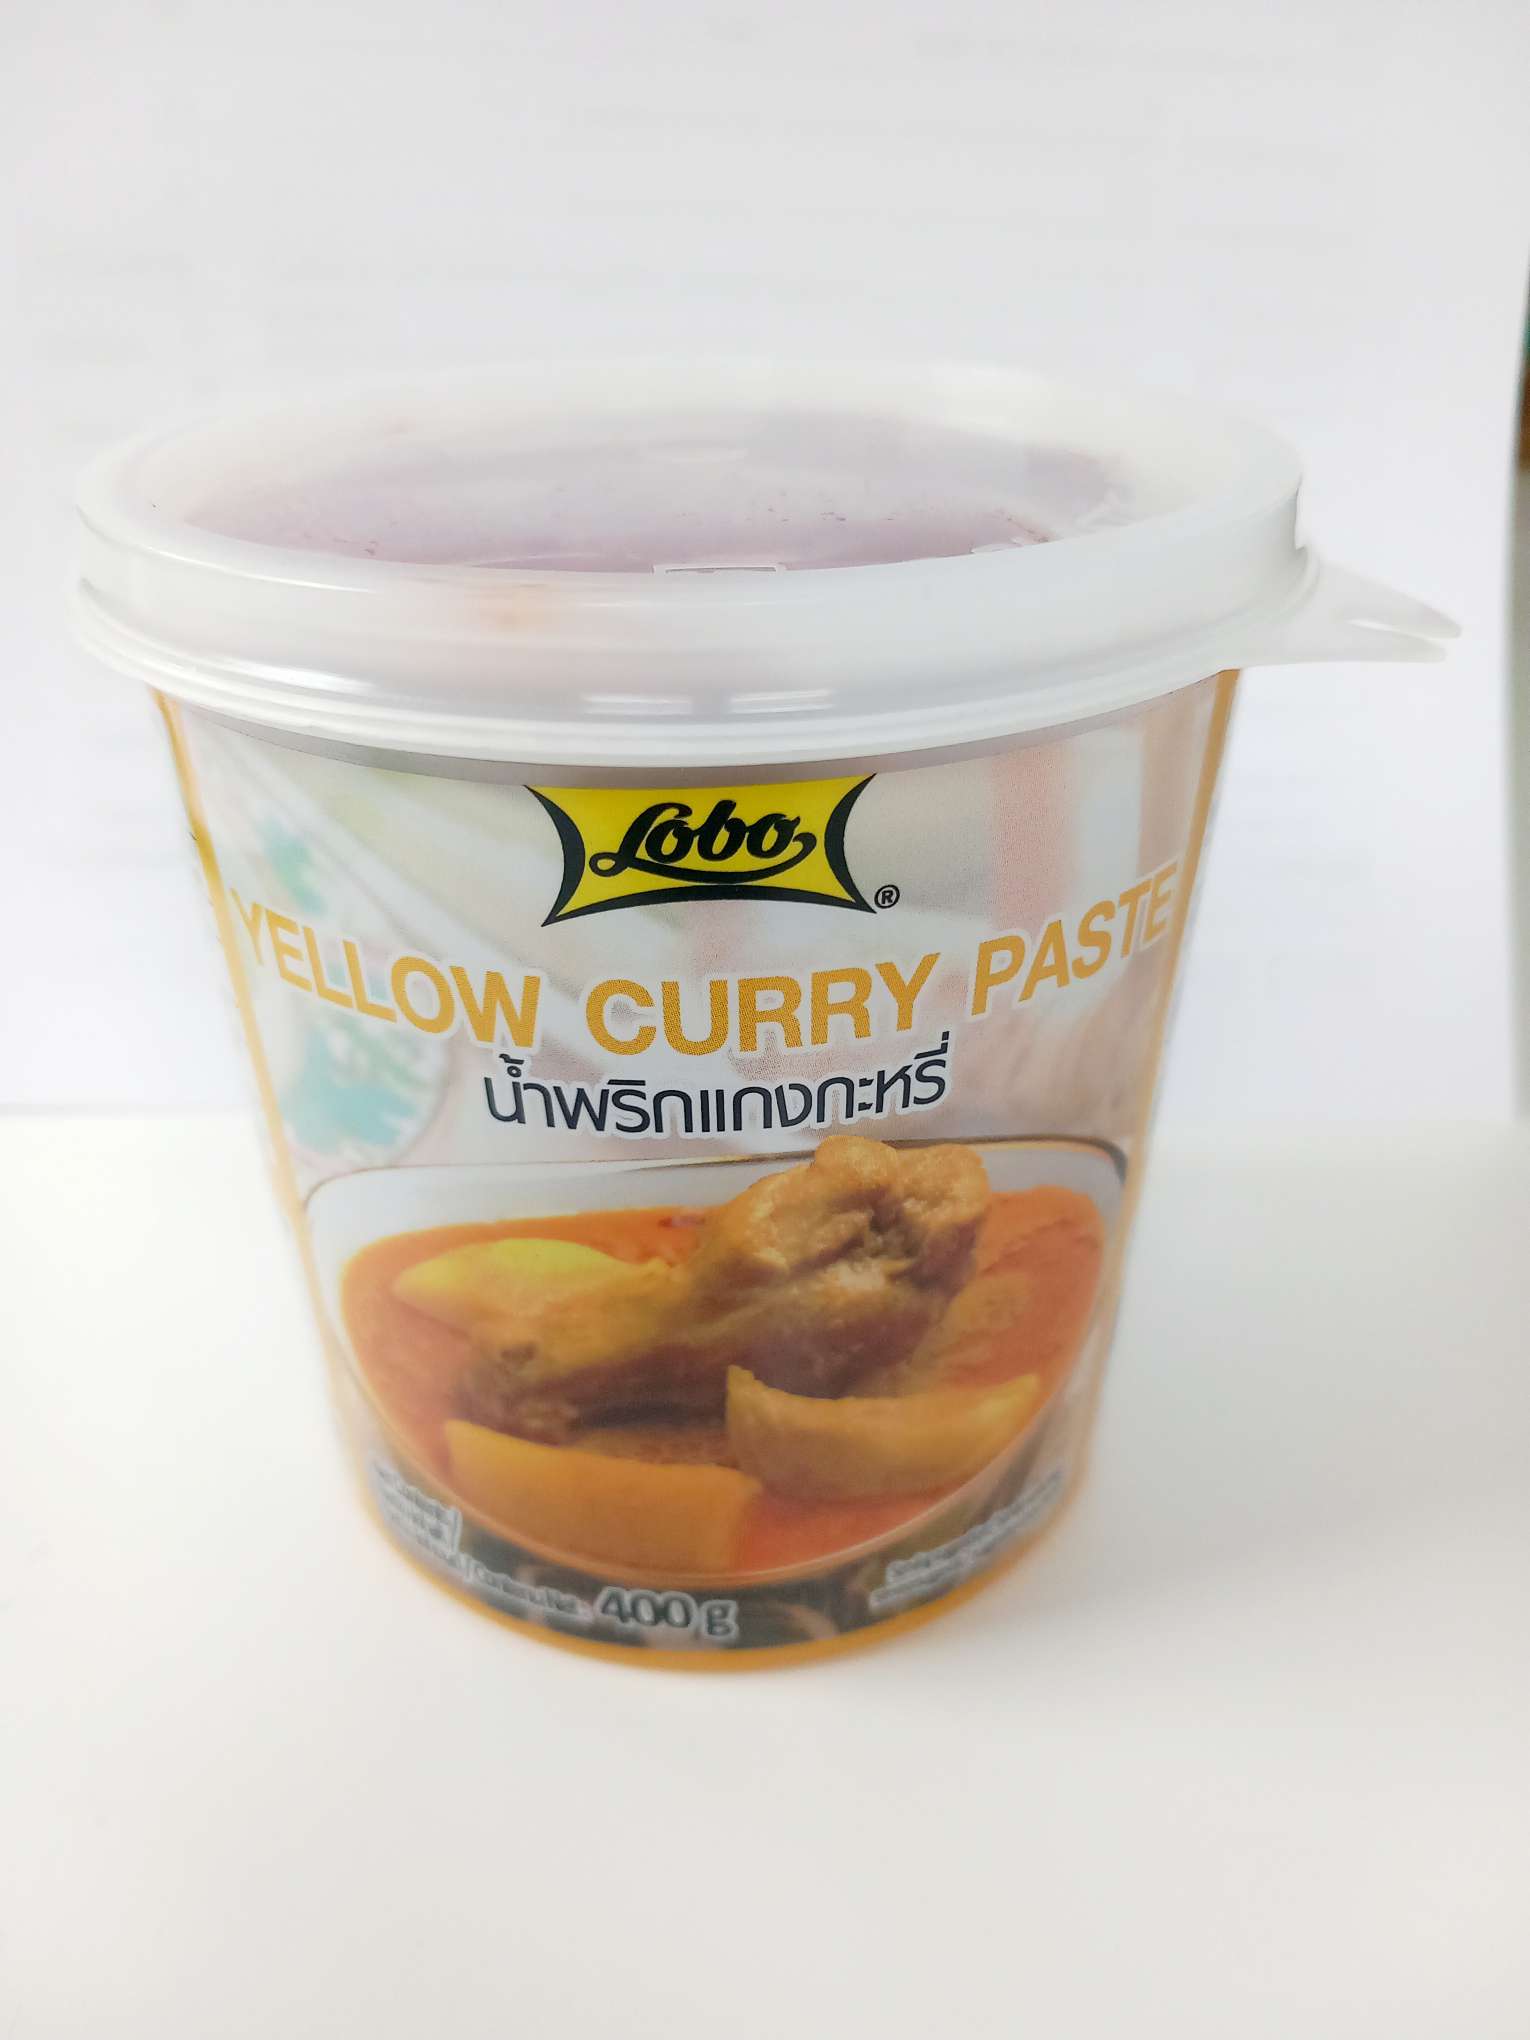 Gelbe Currypaste